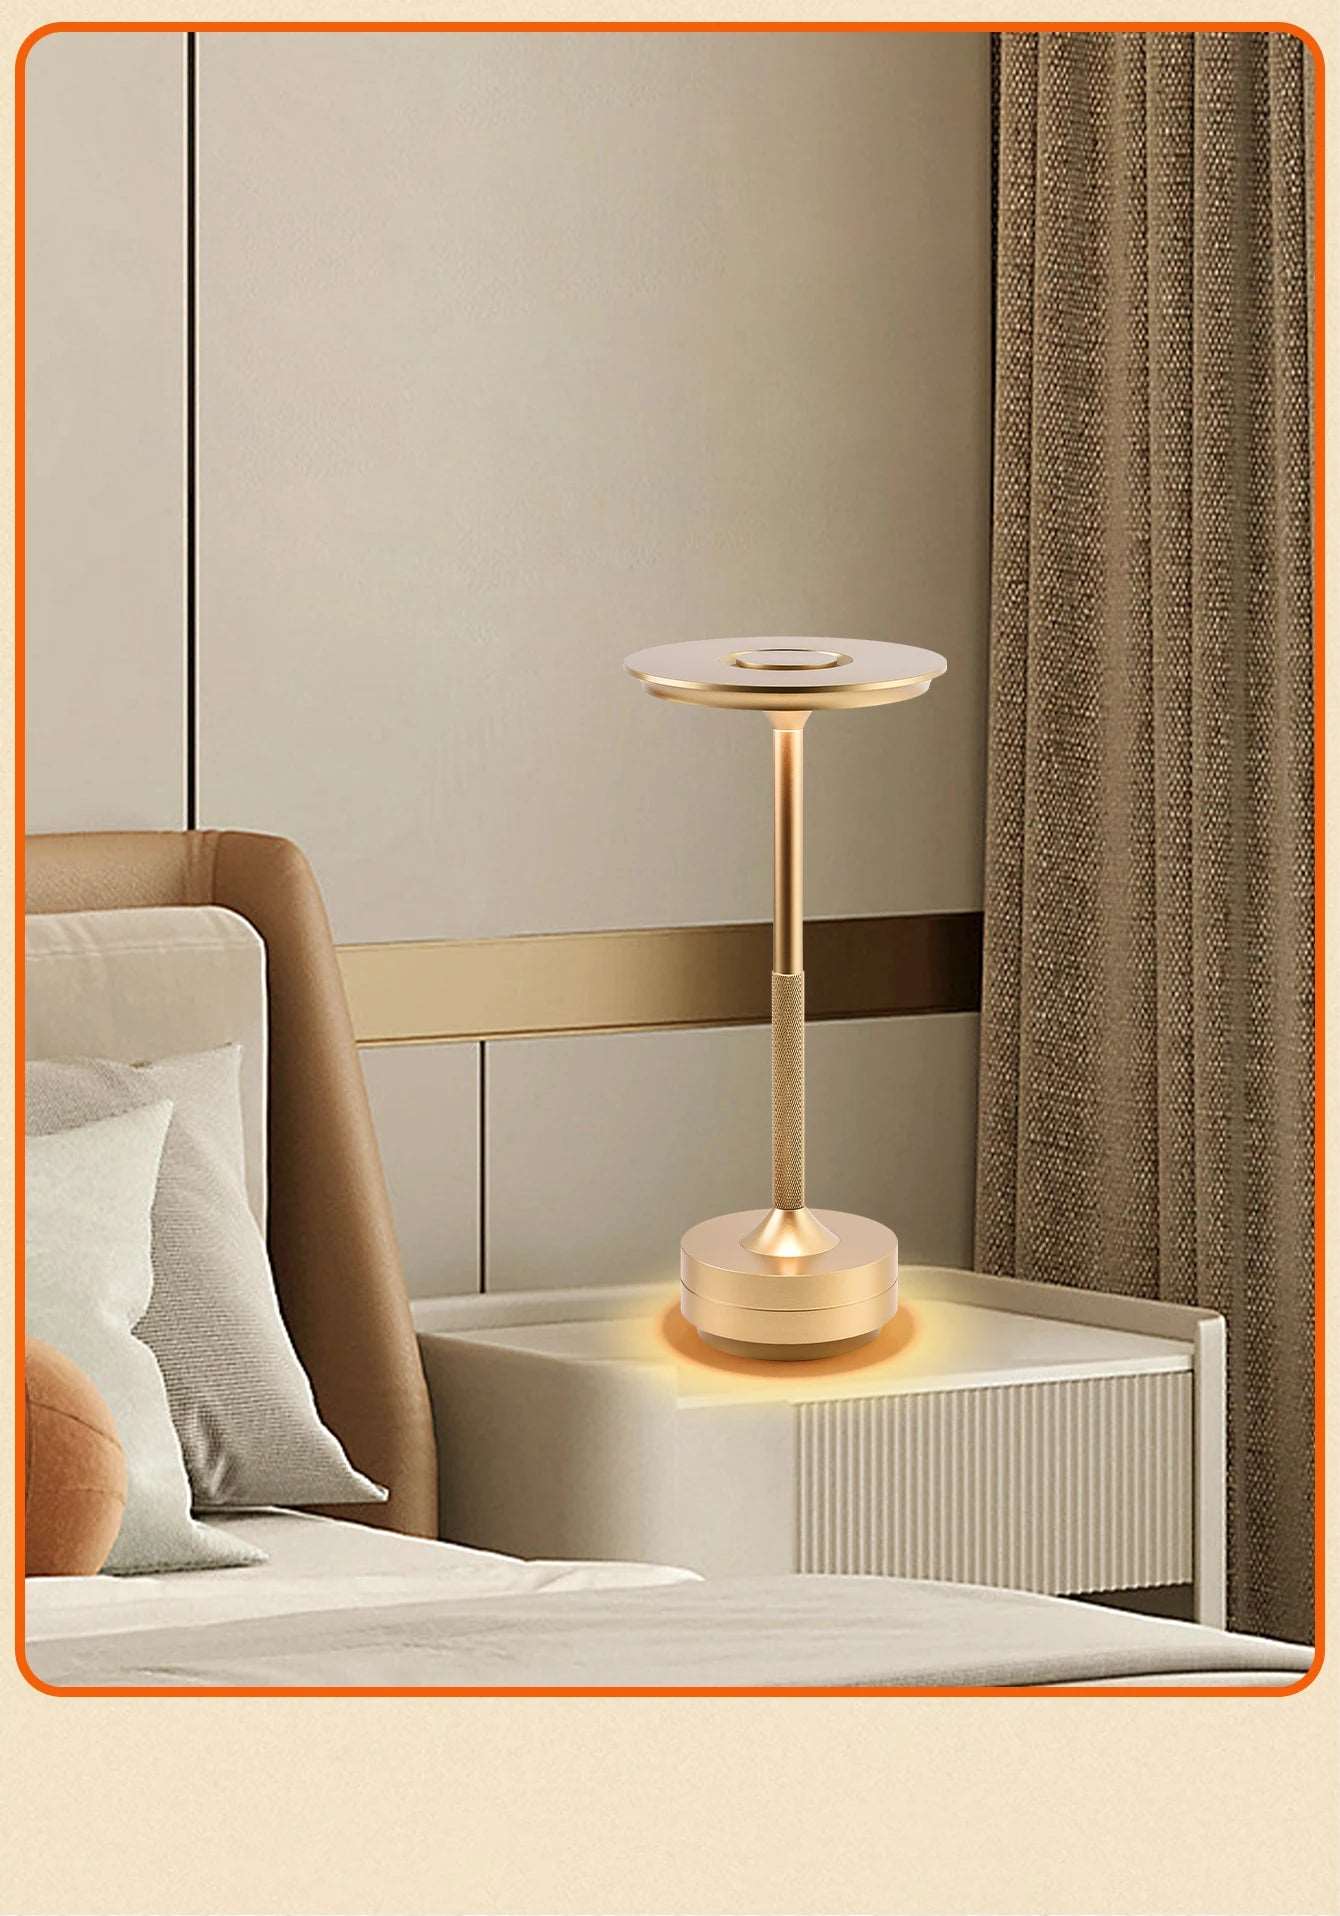 Mushroom I-shaped Table Lamp